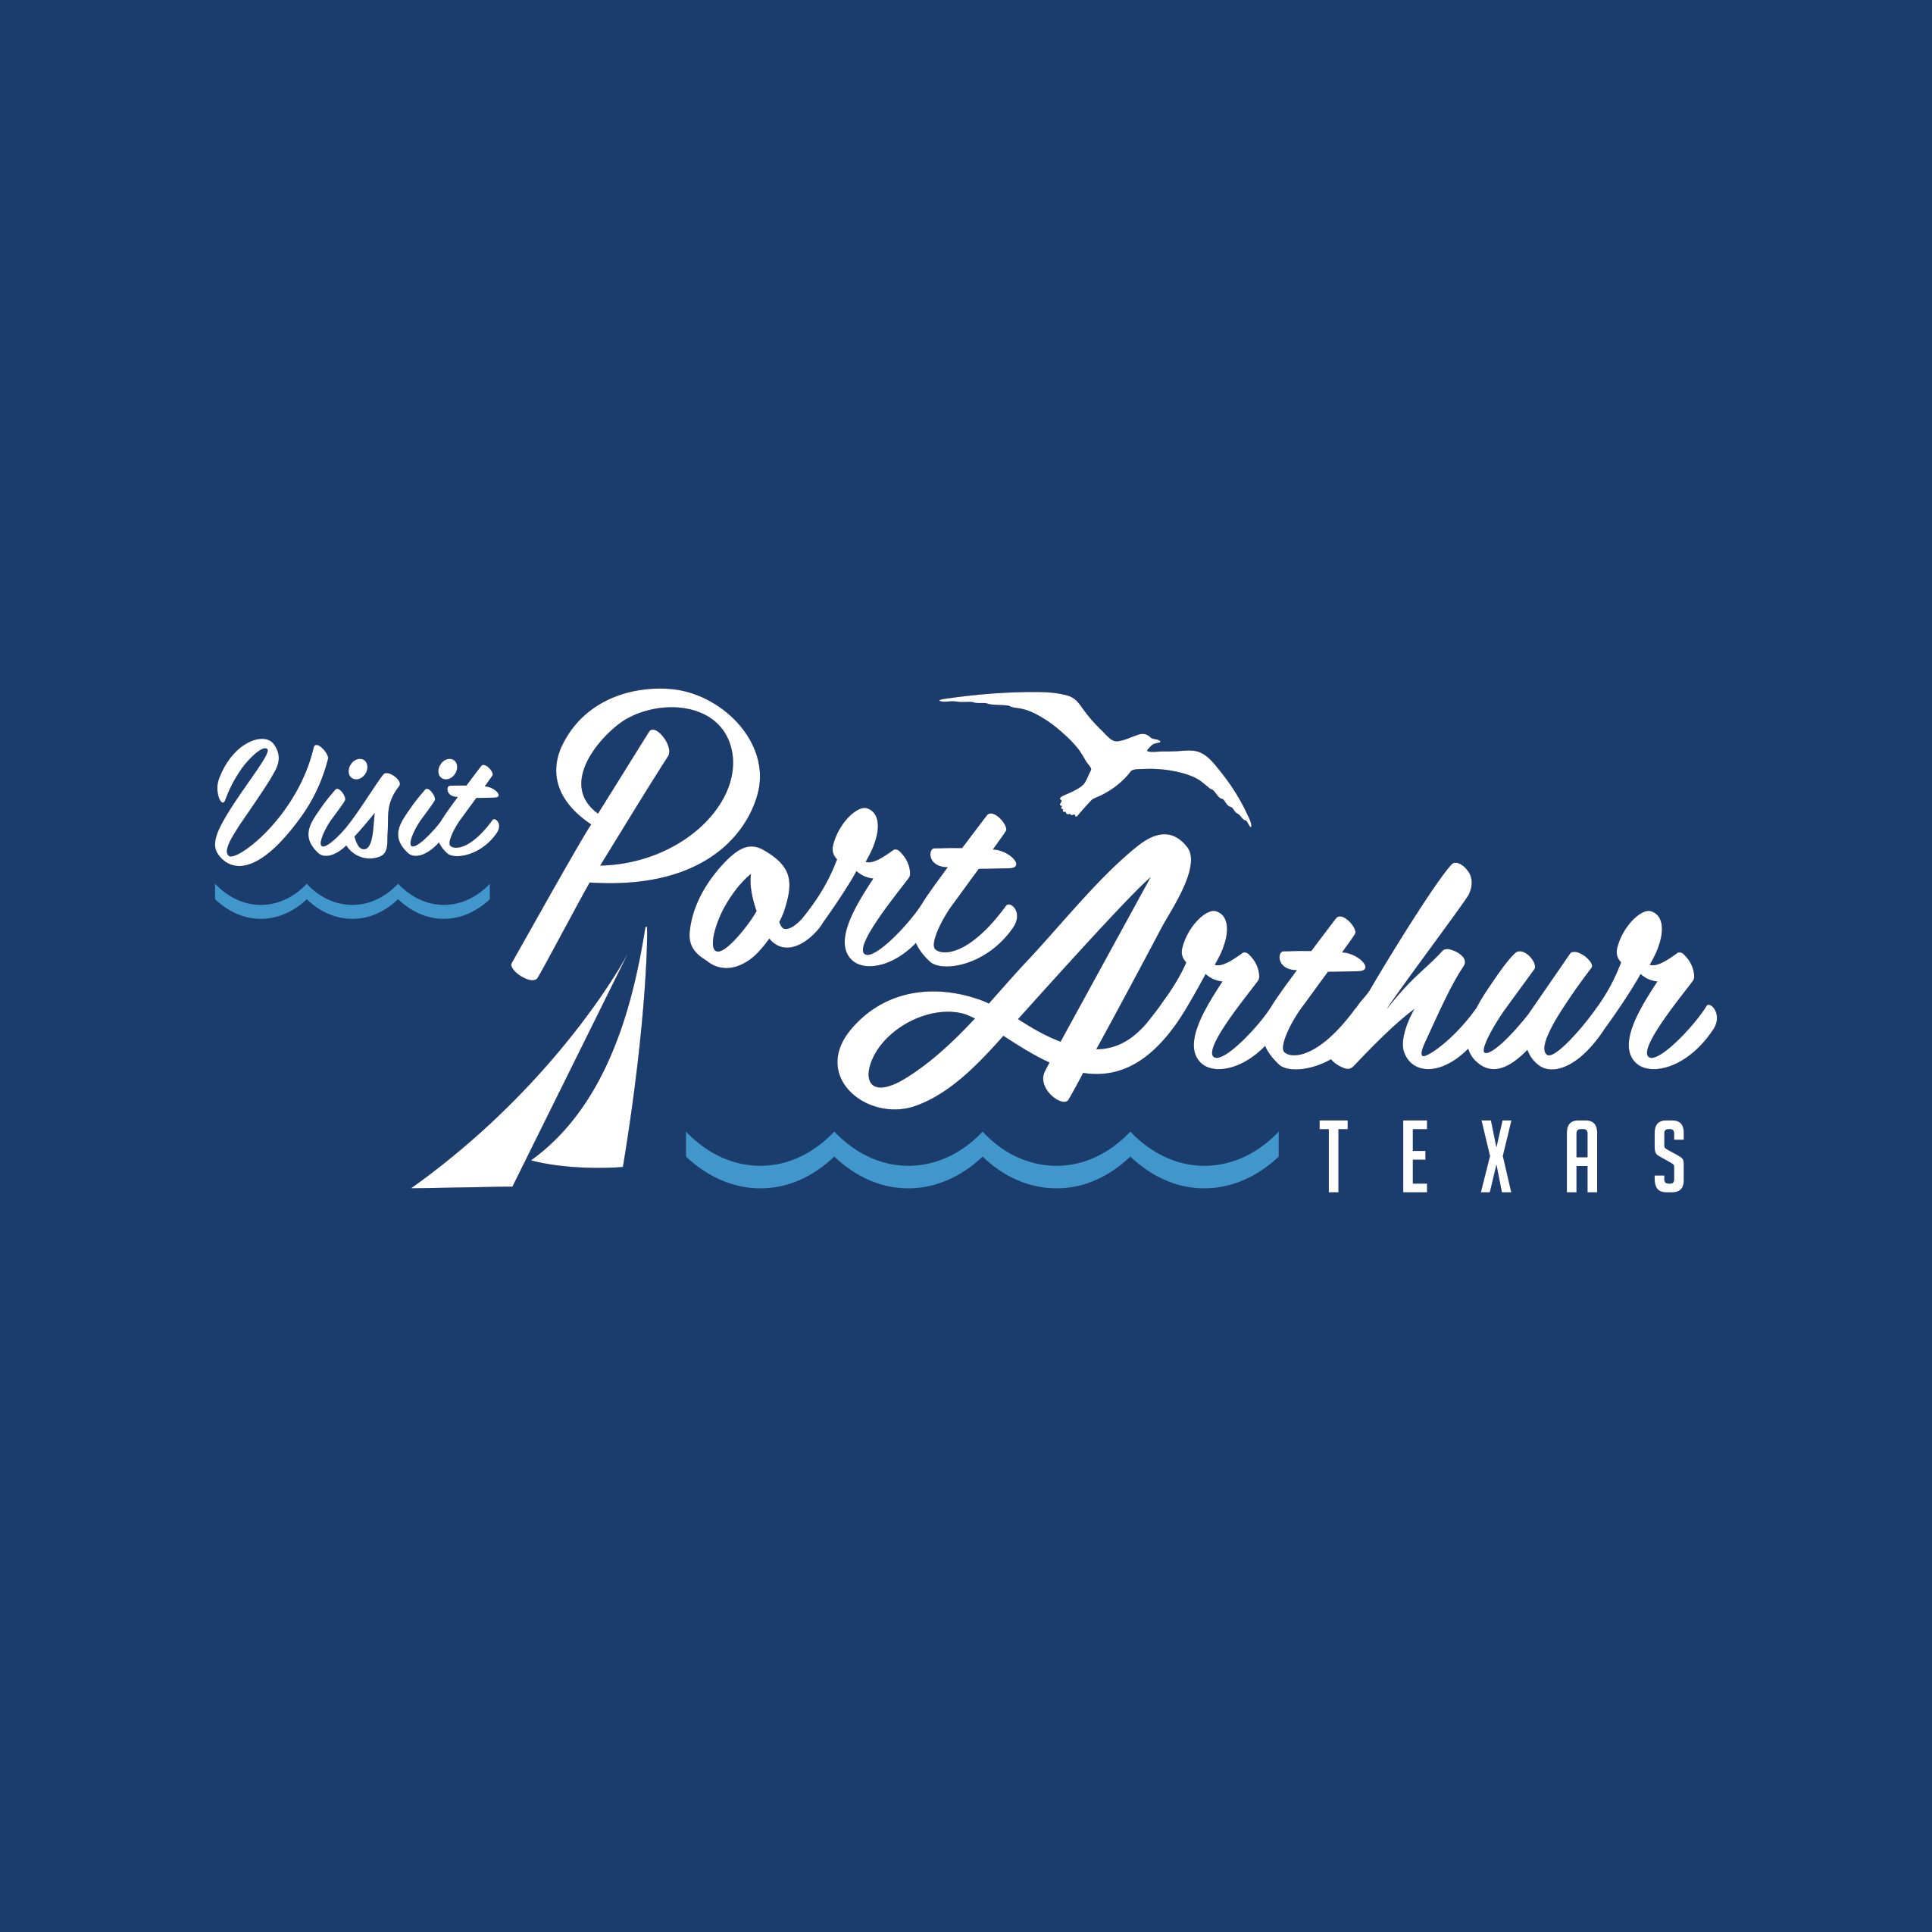 Port Arthur Convention and Visitors Bureau